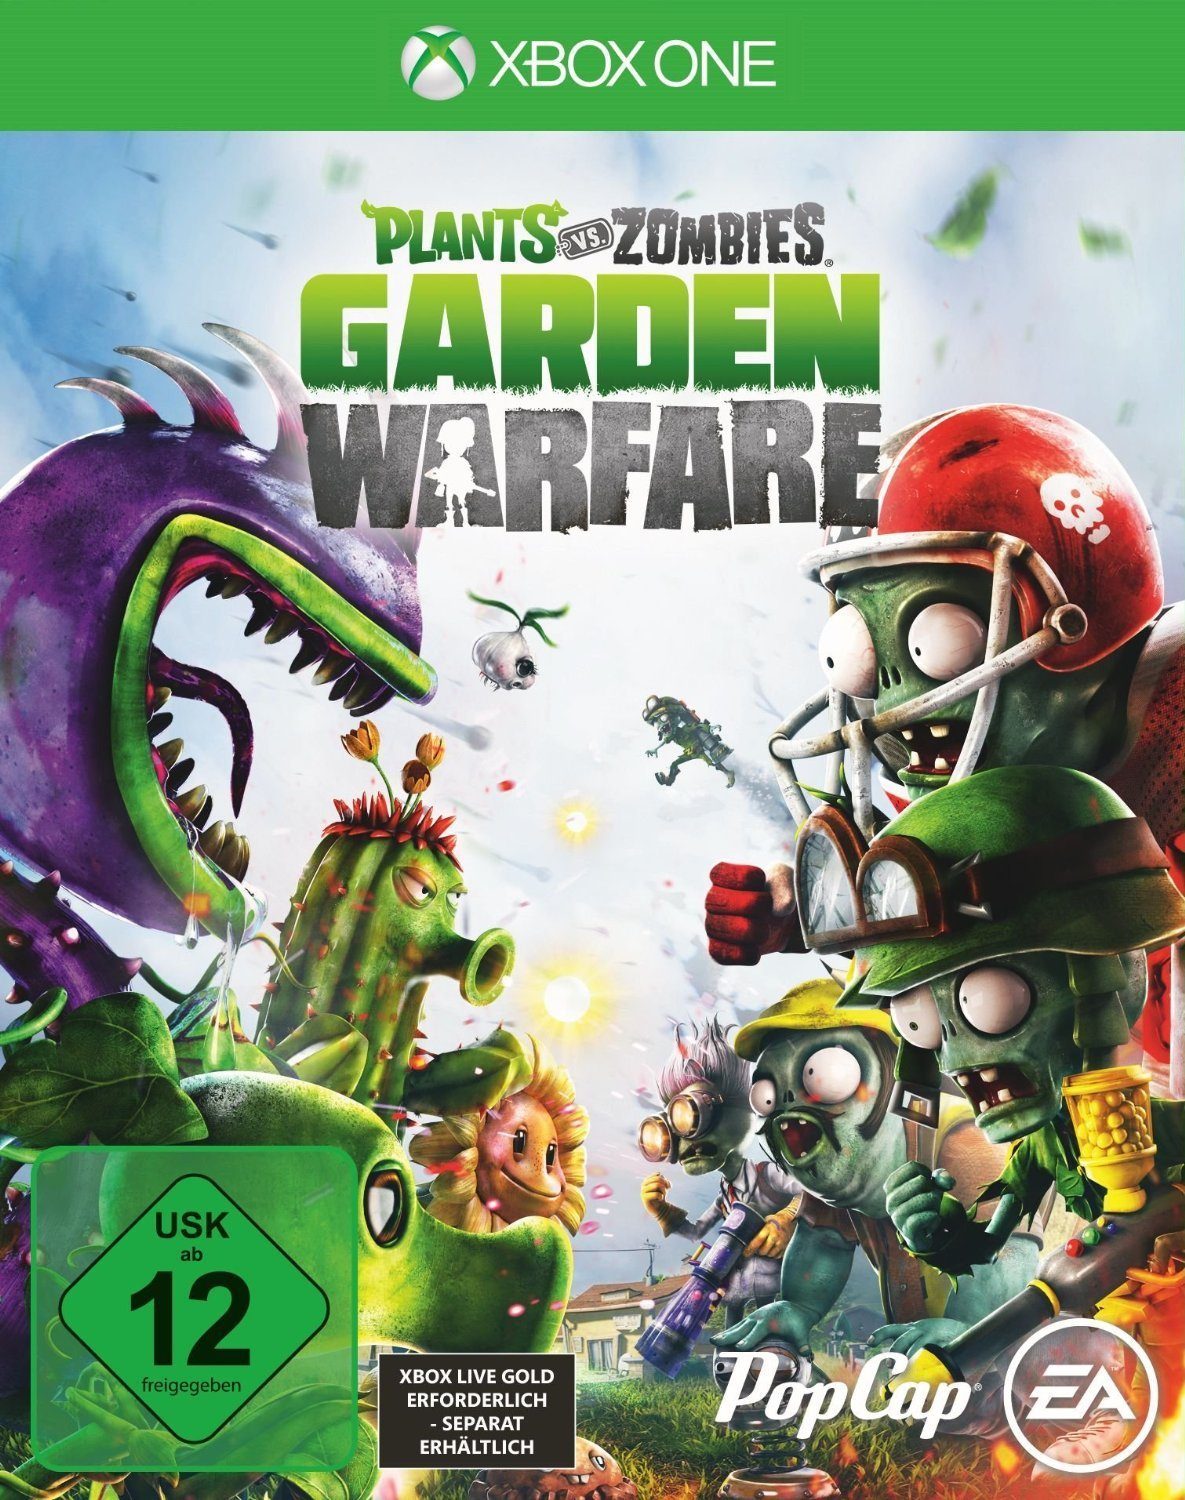 XBOX one Plants vs. Zombies Garden Warfare Xbox One, Kinect optional